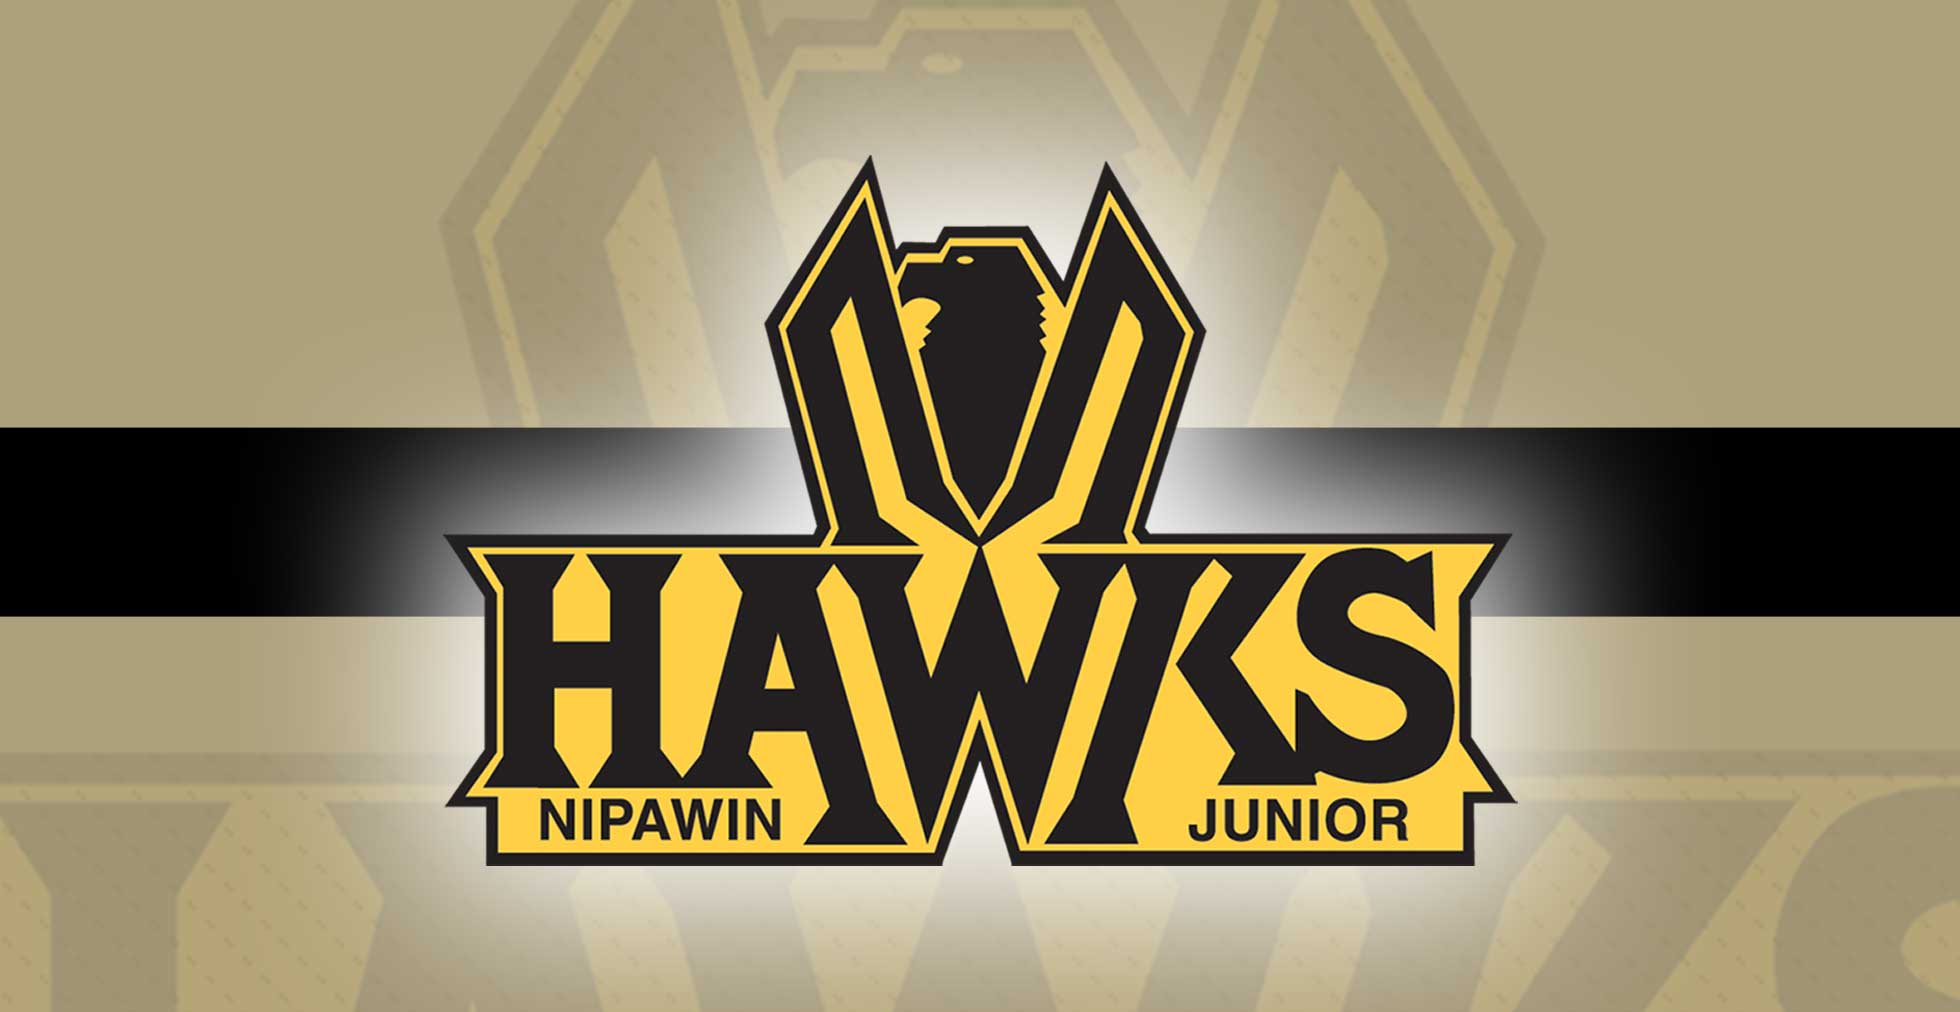 JOB POSTING: Hawks seeking new assistant coach